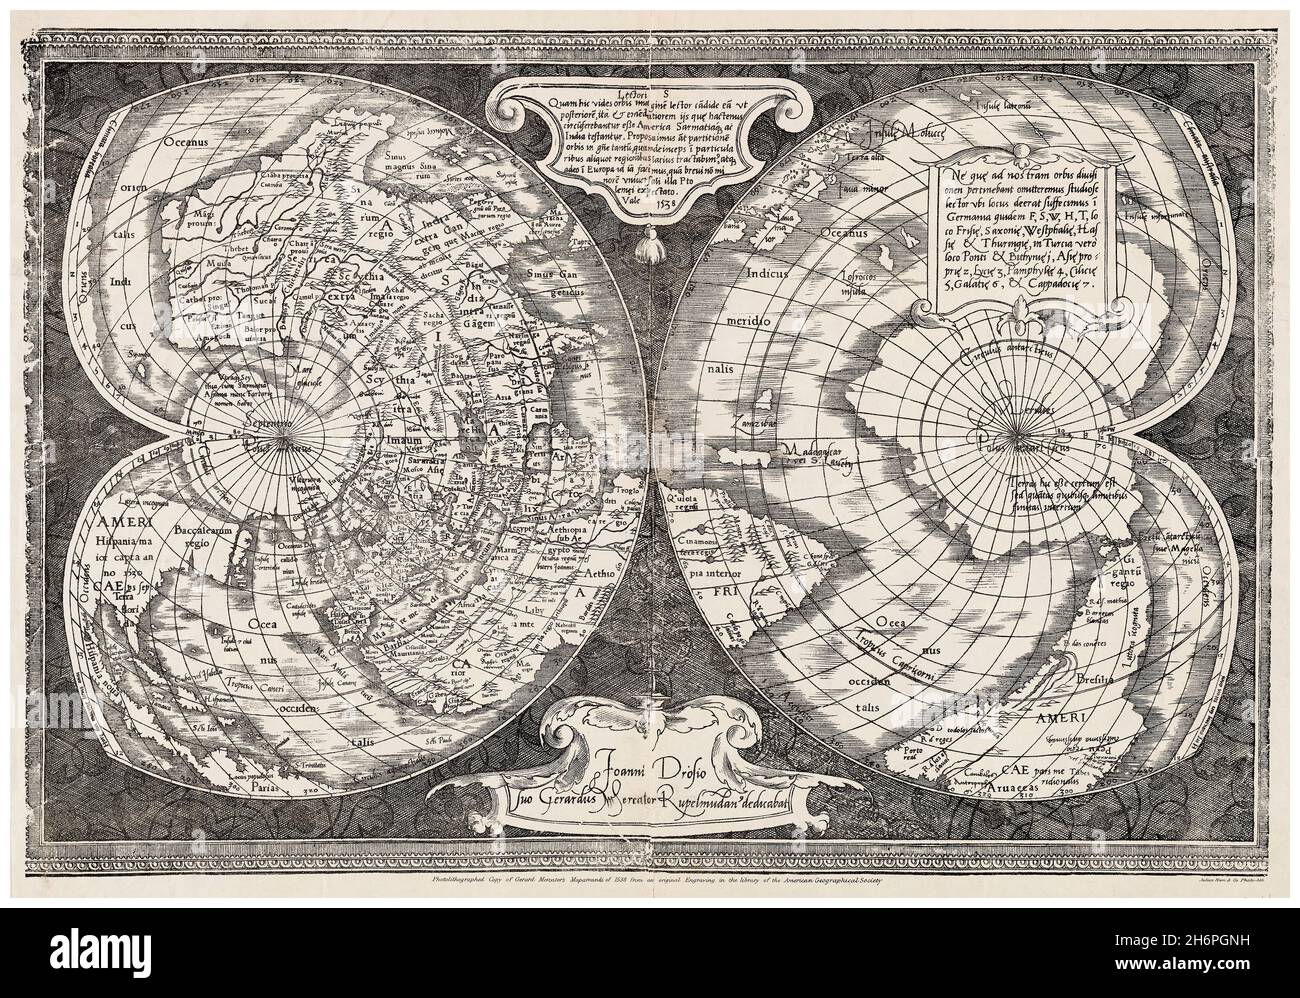 Mapamundi: Weltkarte des 16. Jahrhunderts, Kartographie von Gerard Mercator, 1538 Stockfoto